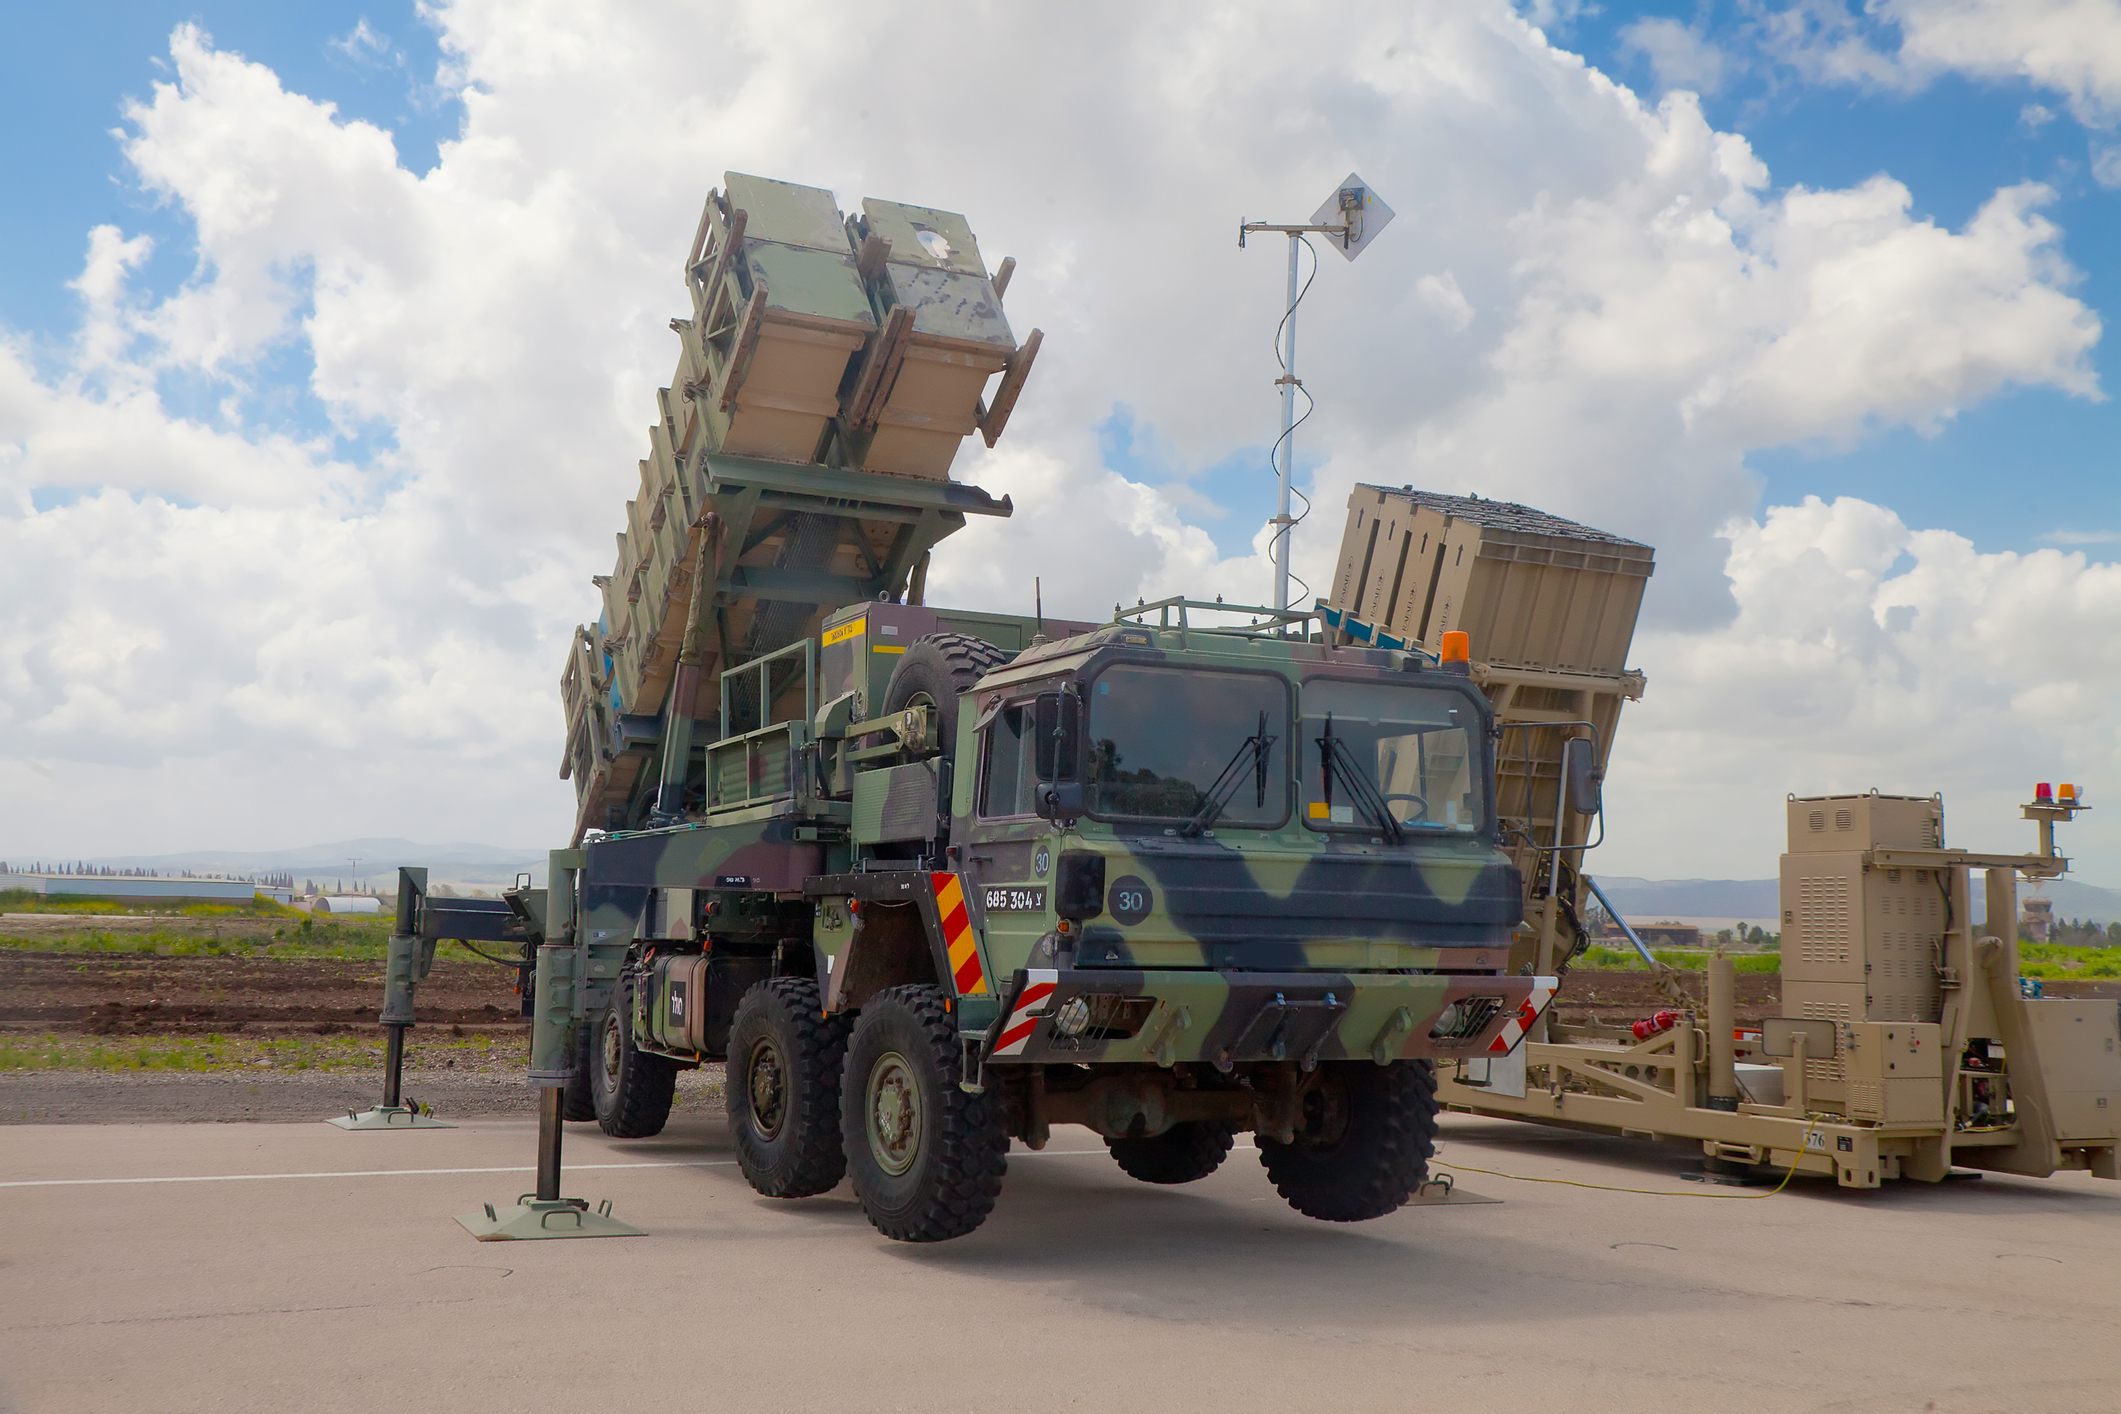 MIM-104 Patriot, sistem de rachete sol-aer, principalul de acest tip folosit de Armata Statelor Unite și de mai multe națiuni membre NATO. Este unul dintre cele mai avansate sisteme de apărare ale NATO într-o posibilă confruntare militară cu Rusia.